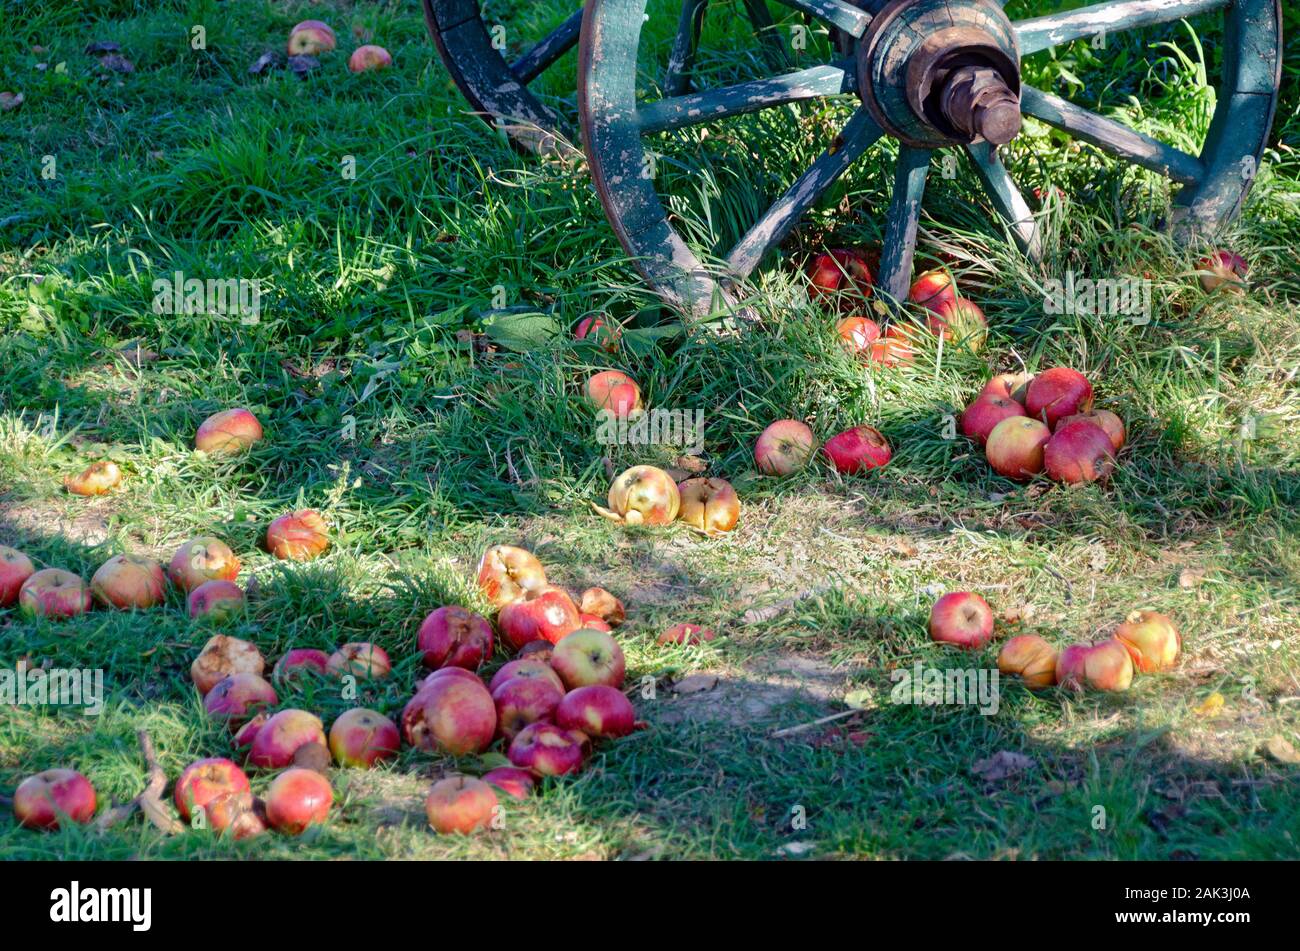 Teilweise verfaulten bunten Äpfel fallen von einem Baum im grünen Gras liegend, bevor eine Alte hölzerne Rad Stockfoto